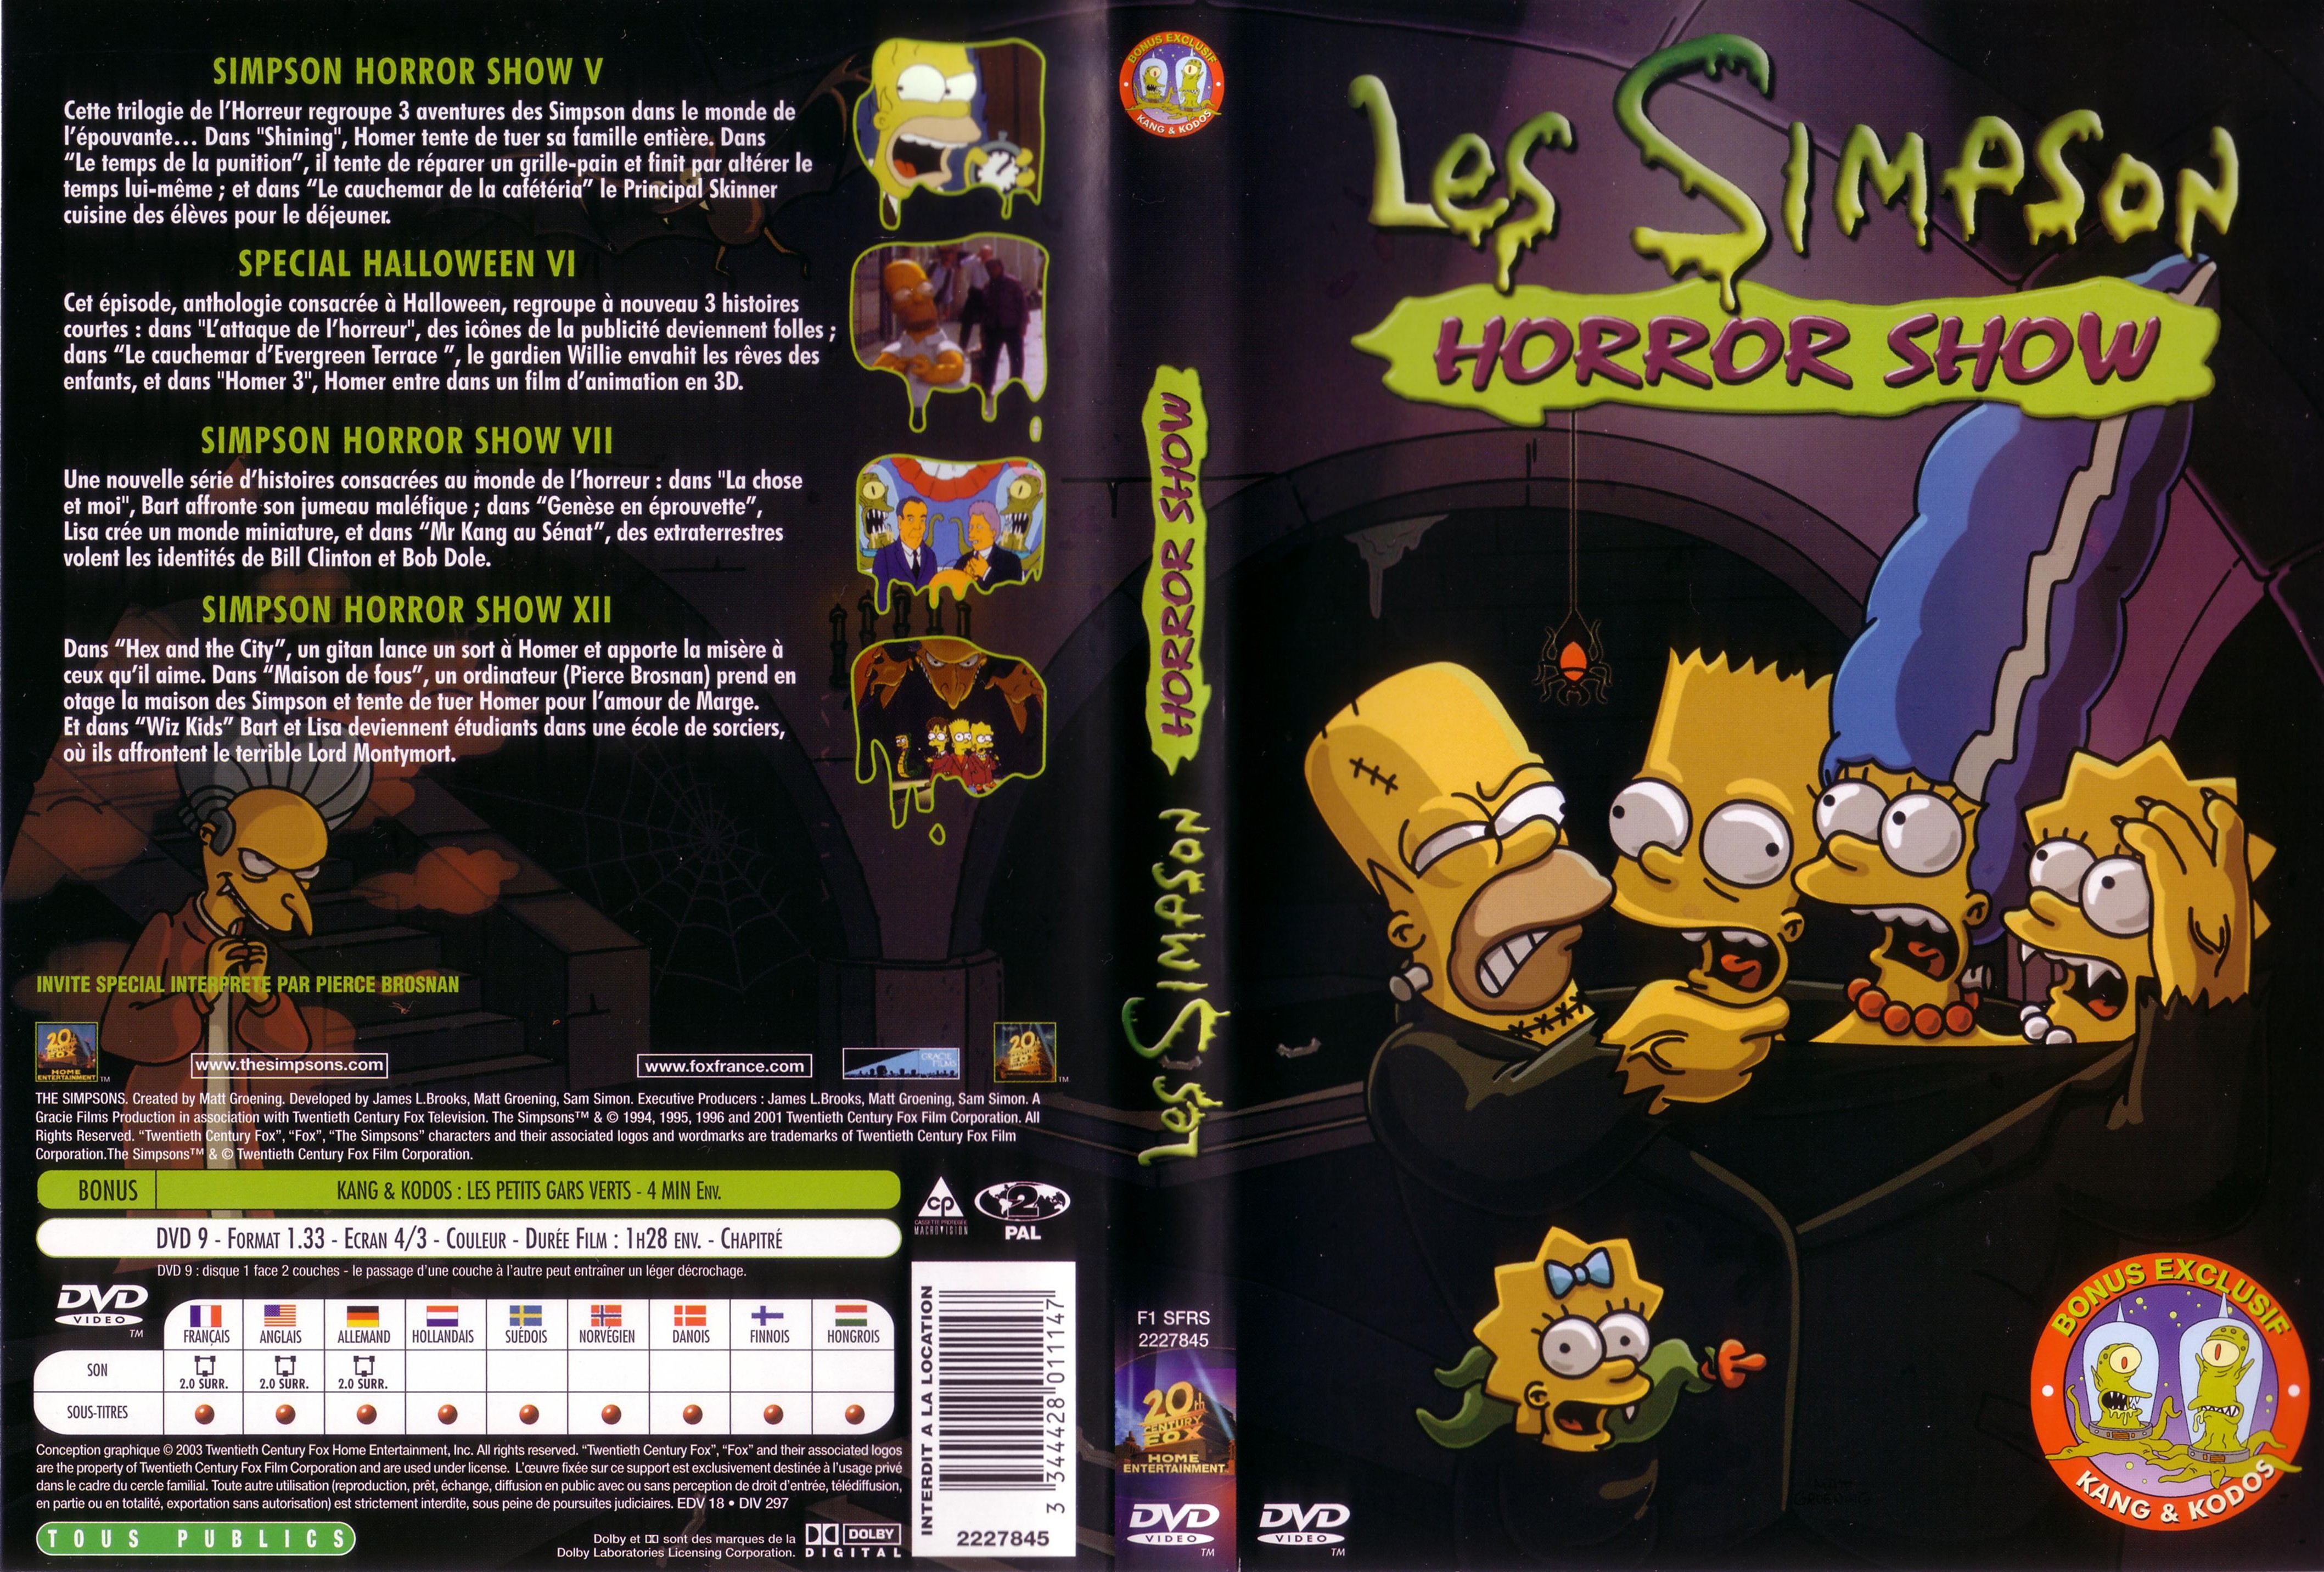 Jaquette DVD Les Simpson horror show